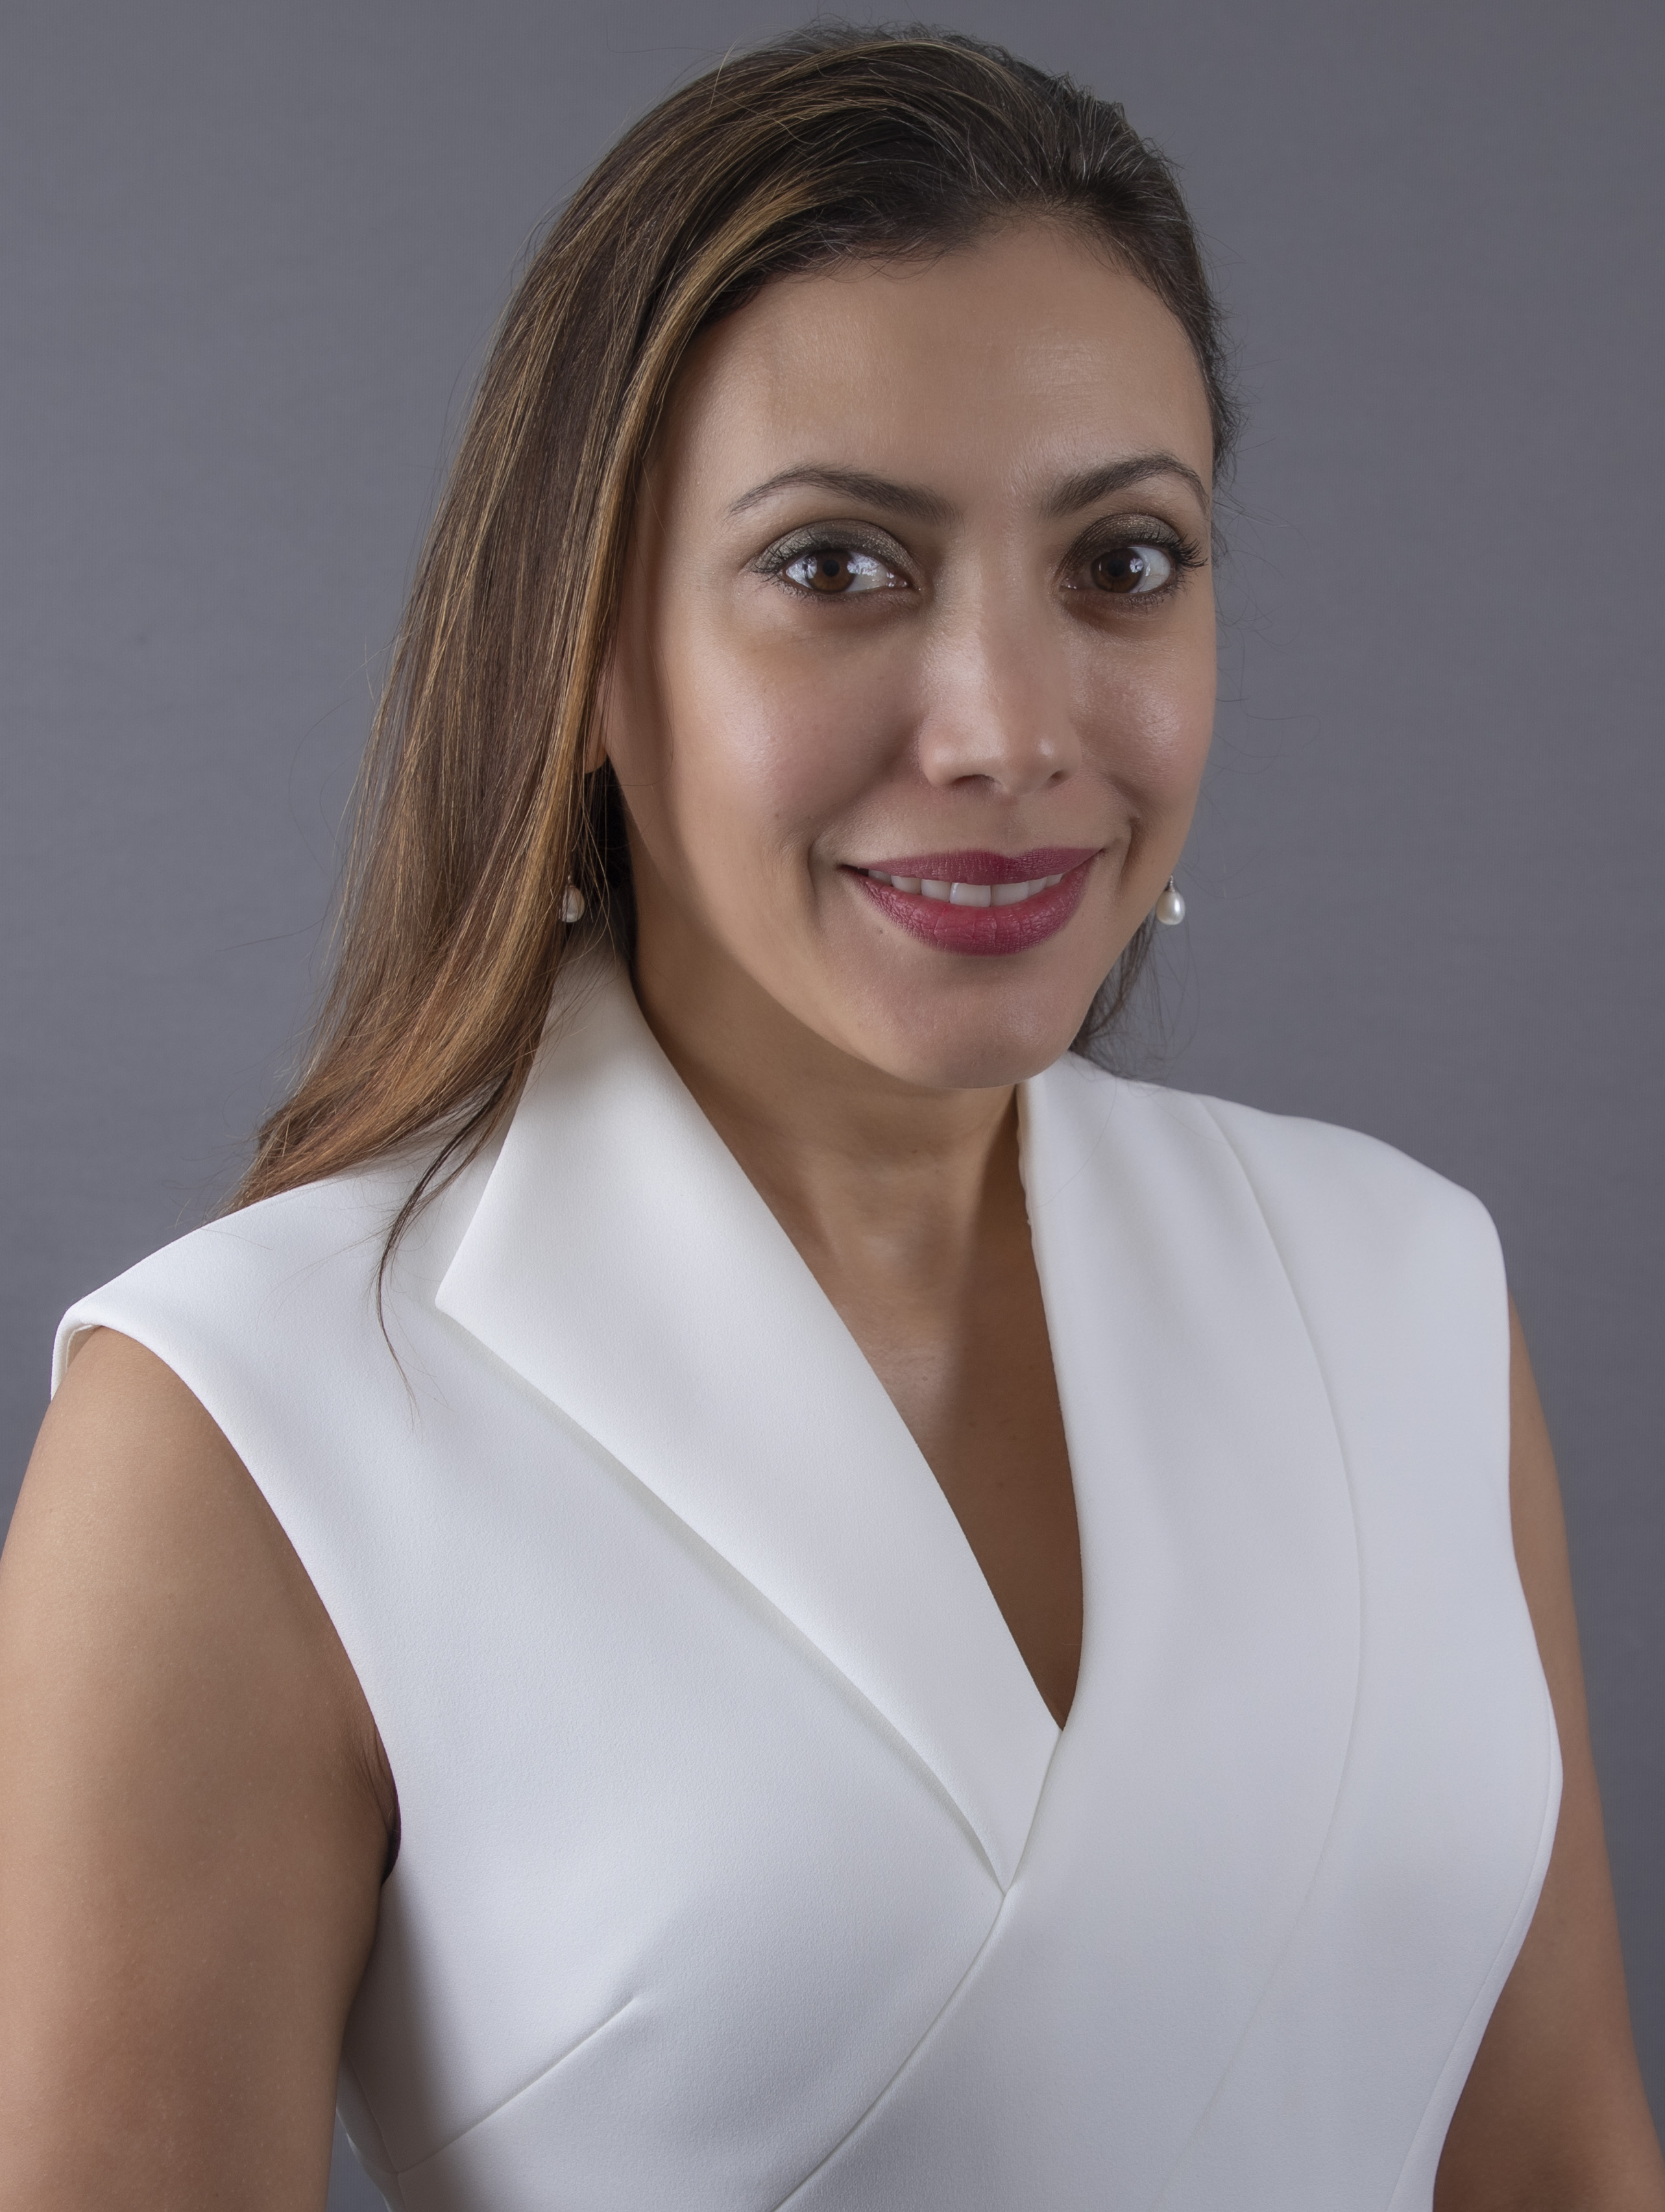 Melba Hernandez-Tejada, PhD